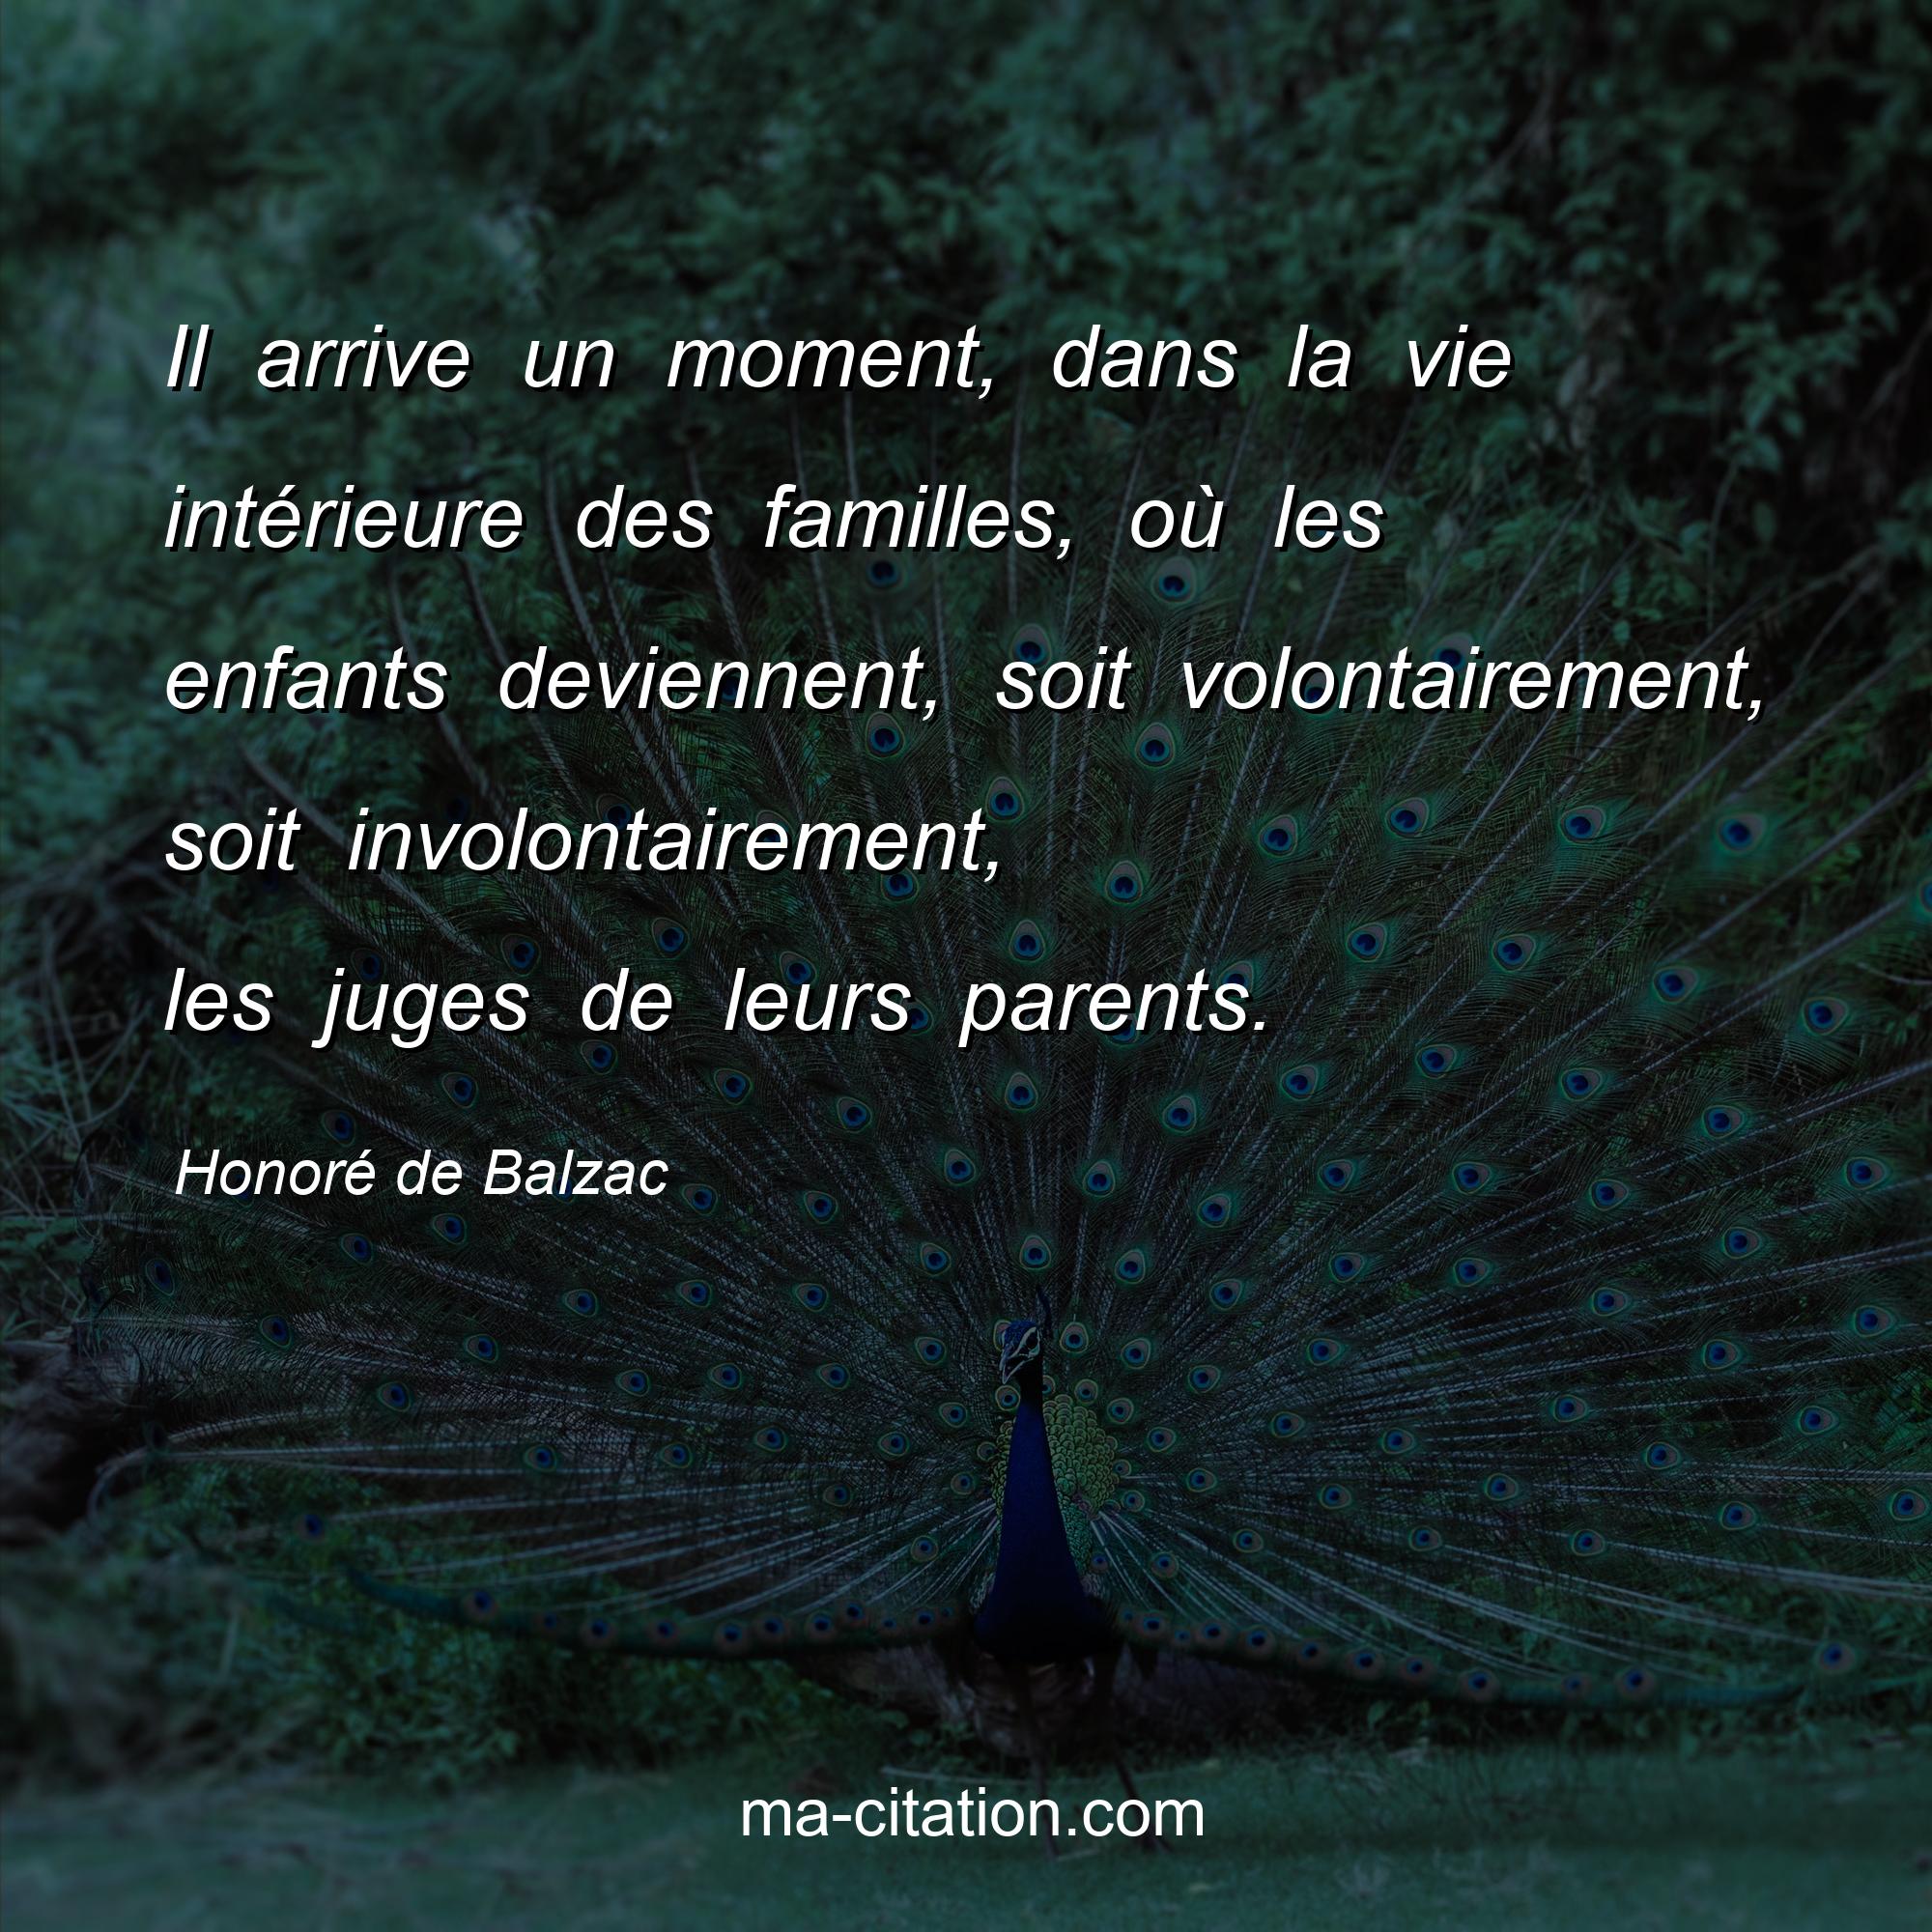 Honoré de Balzac : Il arrive un moment, dans la vie intérieure des familles, où les enfants deviennent, soit volontairement, soit involontairement, les juges de leurs parents.